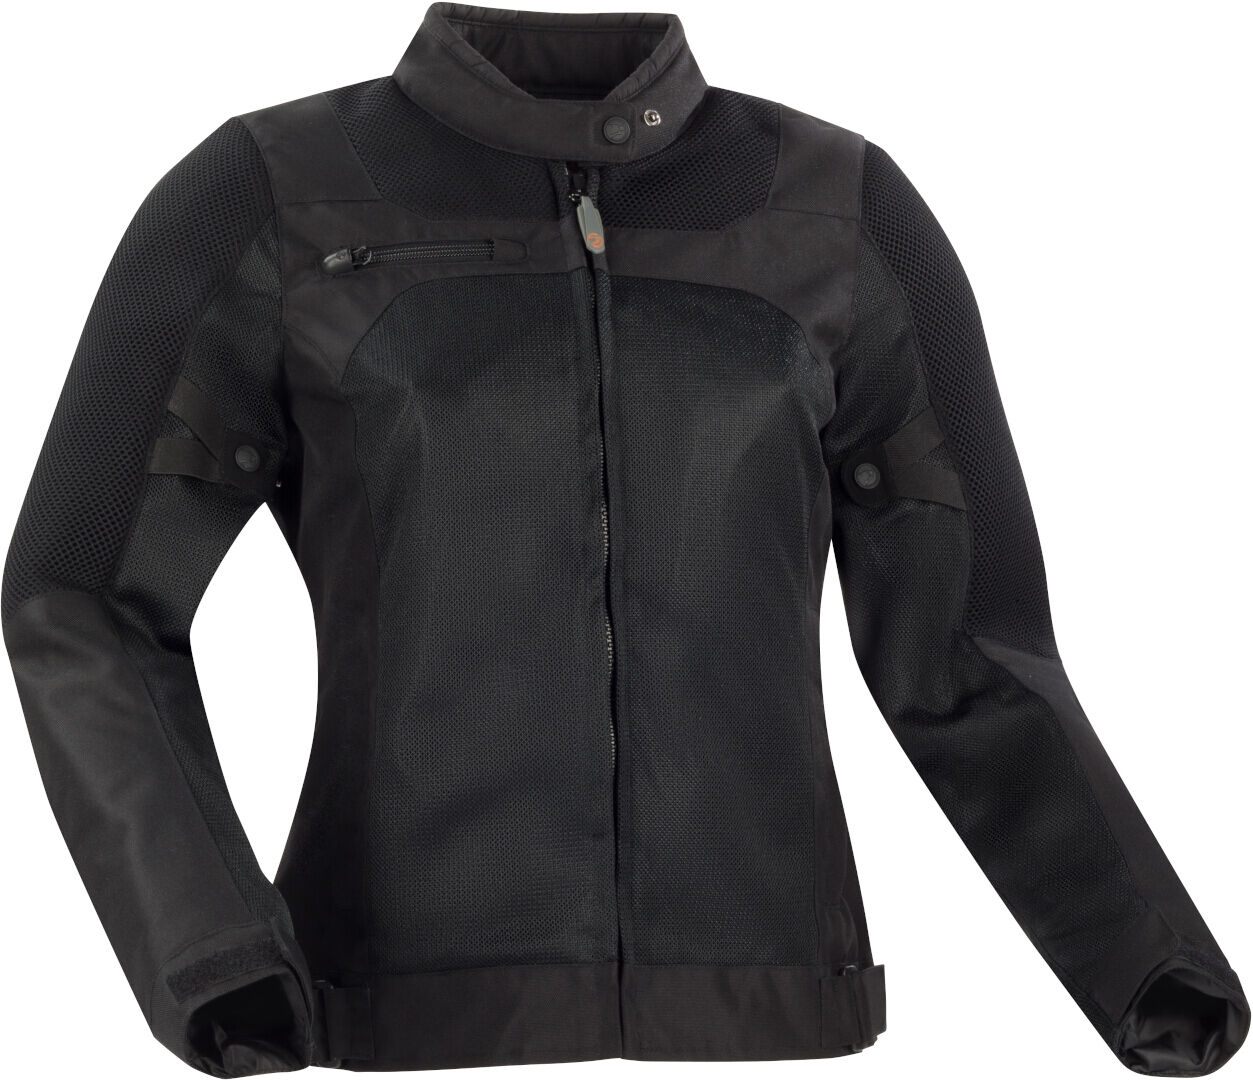 Bering Malibu Damas motocicleta chaqueta textil - Negro (46)